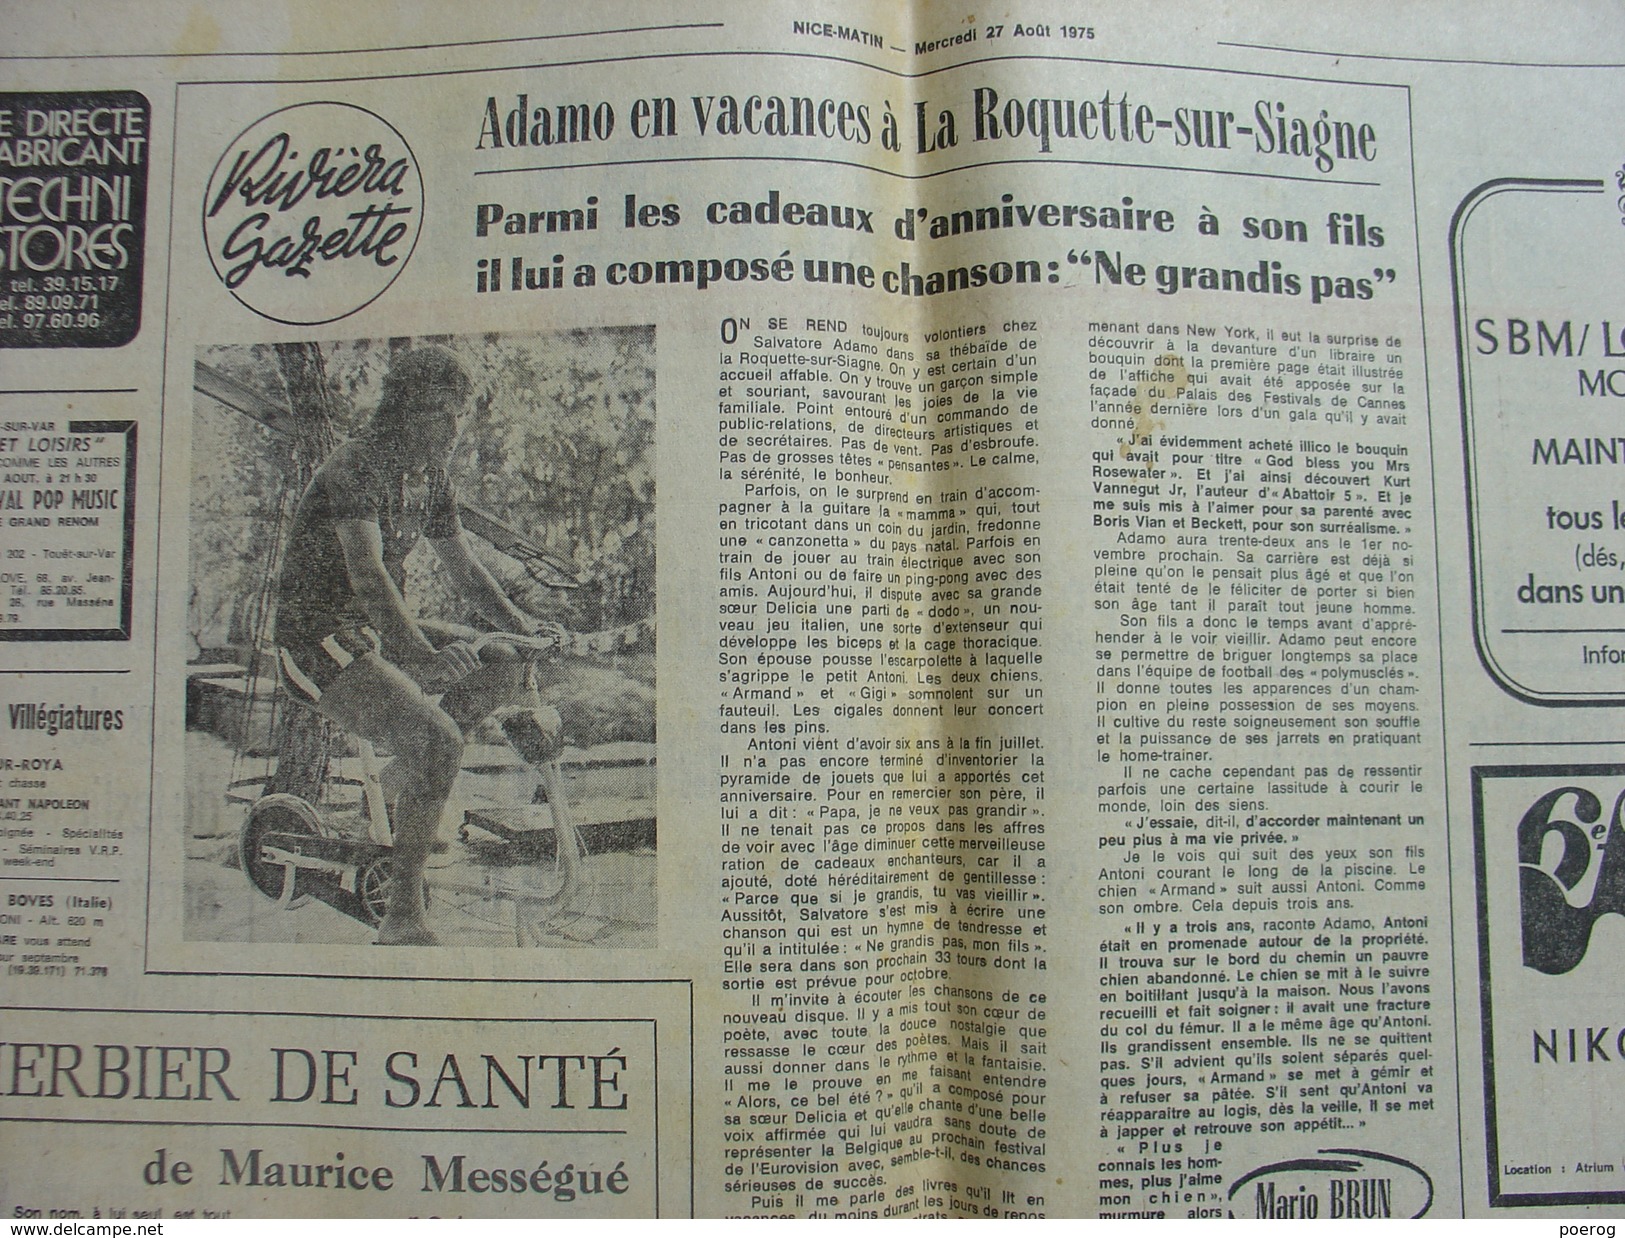 NICE MATIN Du 27 AOUT 1975 - COMMANDO ALERIA CORSE - ST MARTIN DU VAR - ADAMO LA ROQUETTE SUR SIAGNE - MONACO FOOTBALL - 1950 à Nos Jours